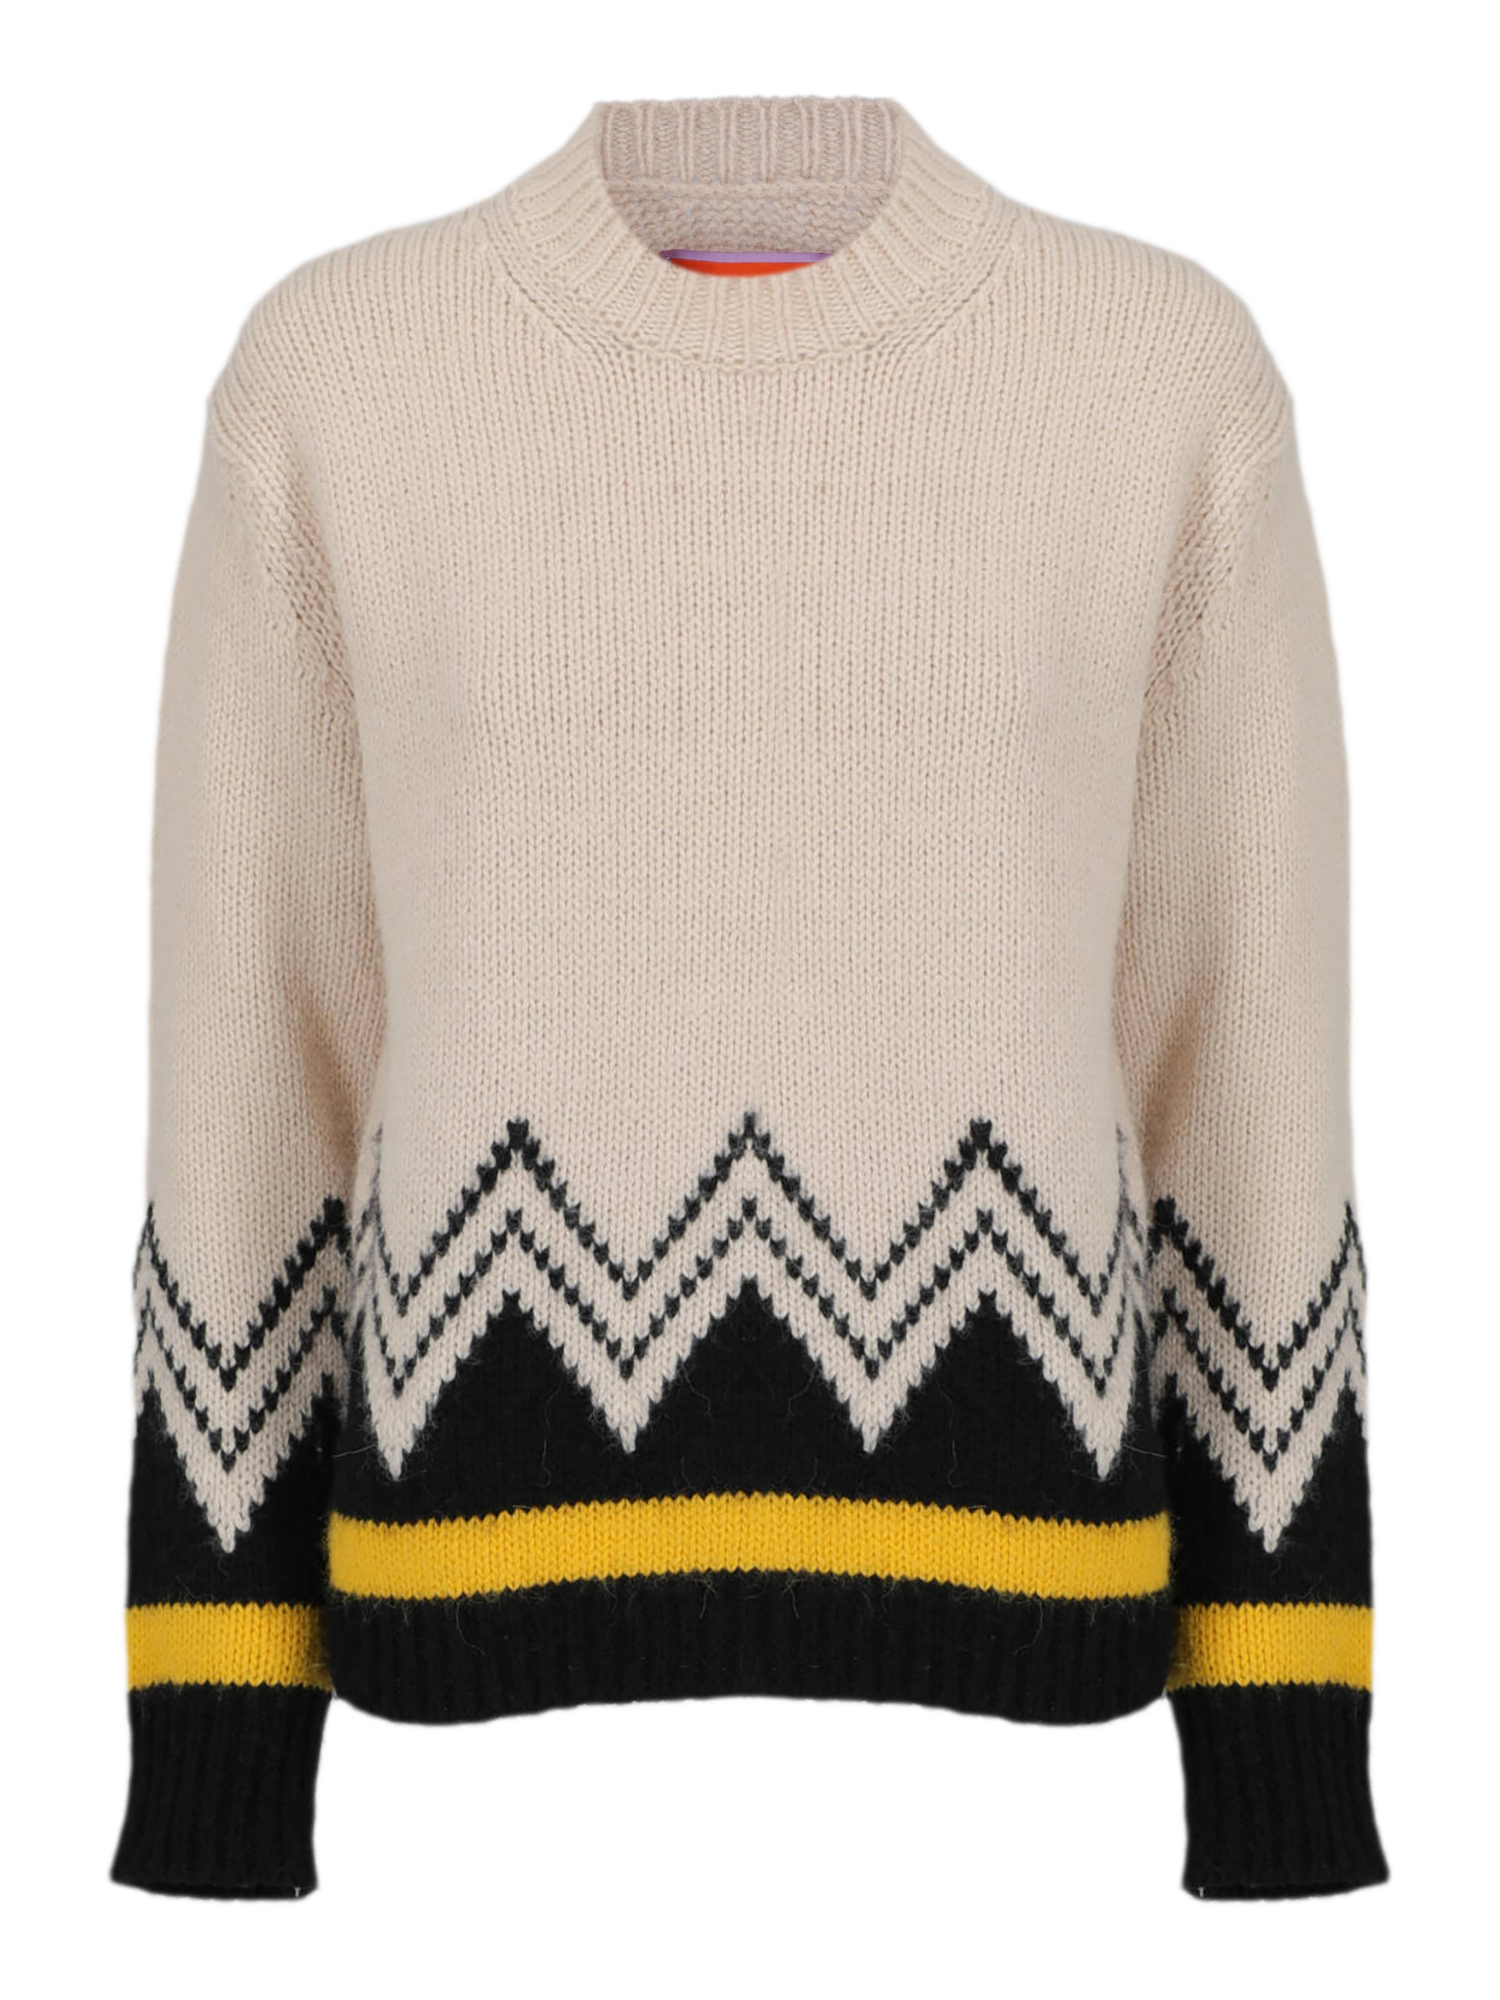 Pre-owned La Doublej Women's Knitwear & Sweatshirts -  - In Beige, Black, Yellow Xs